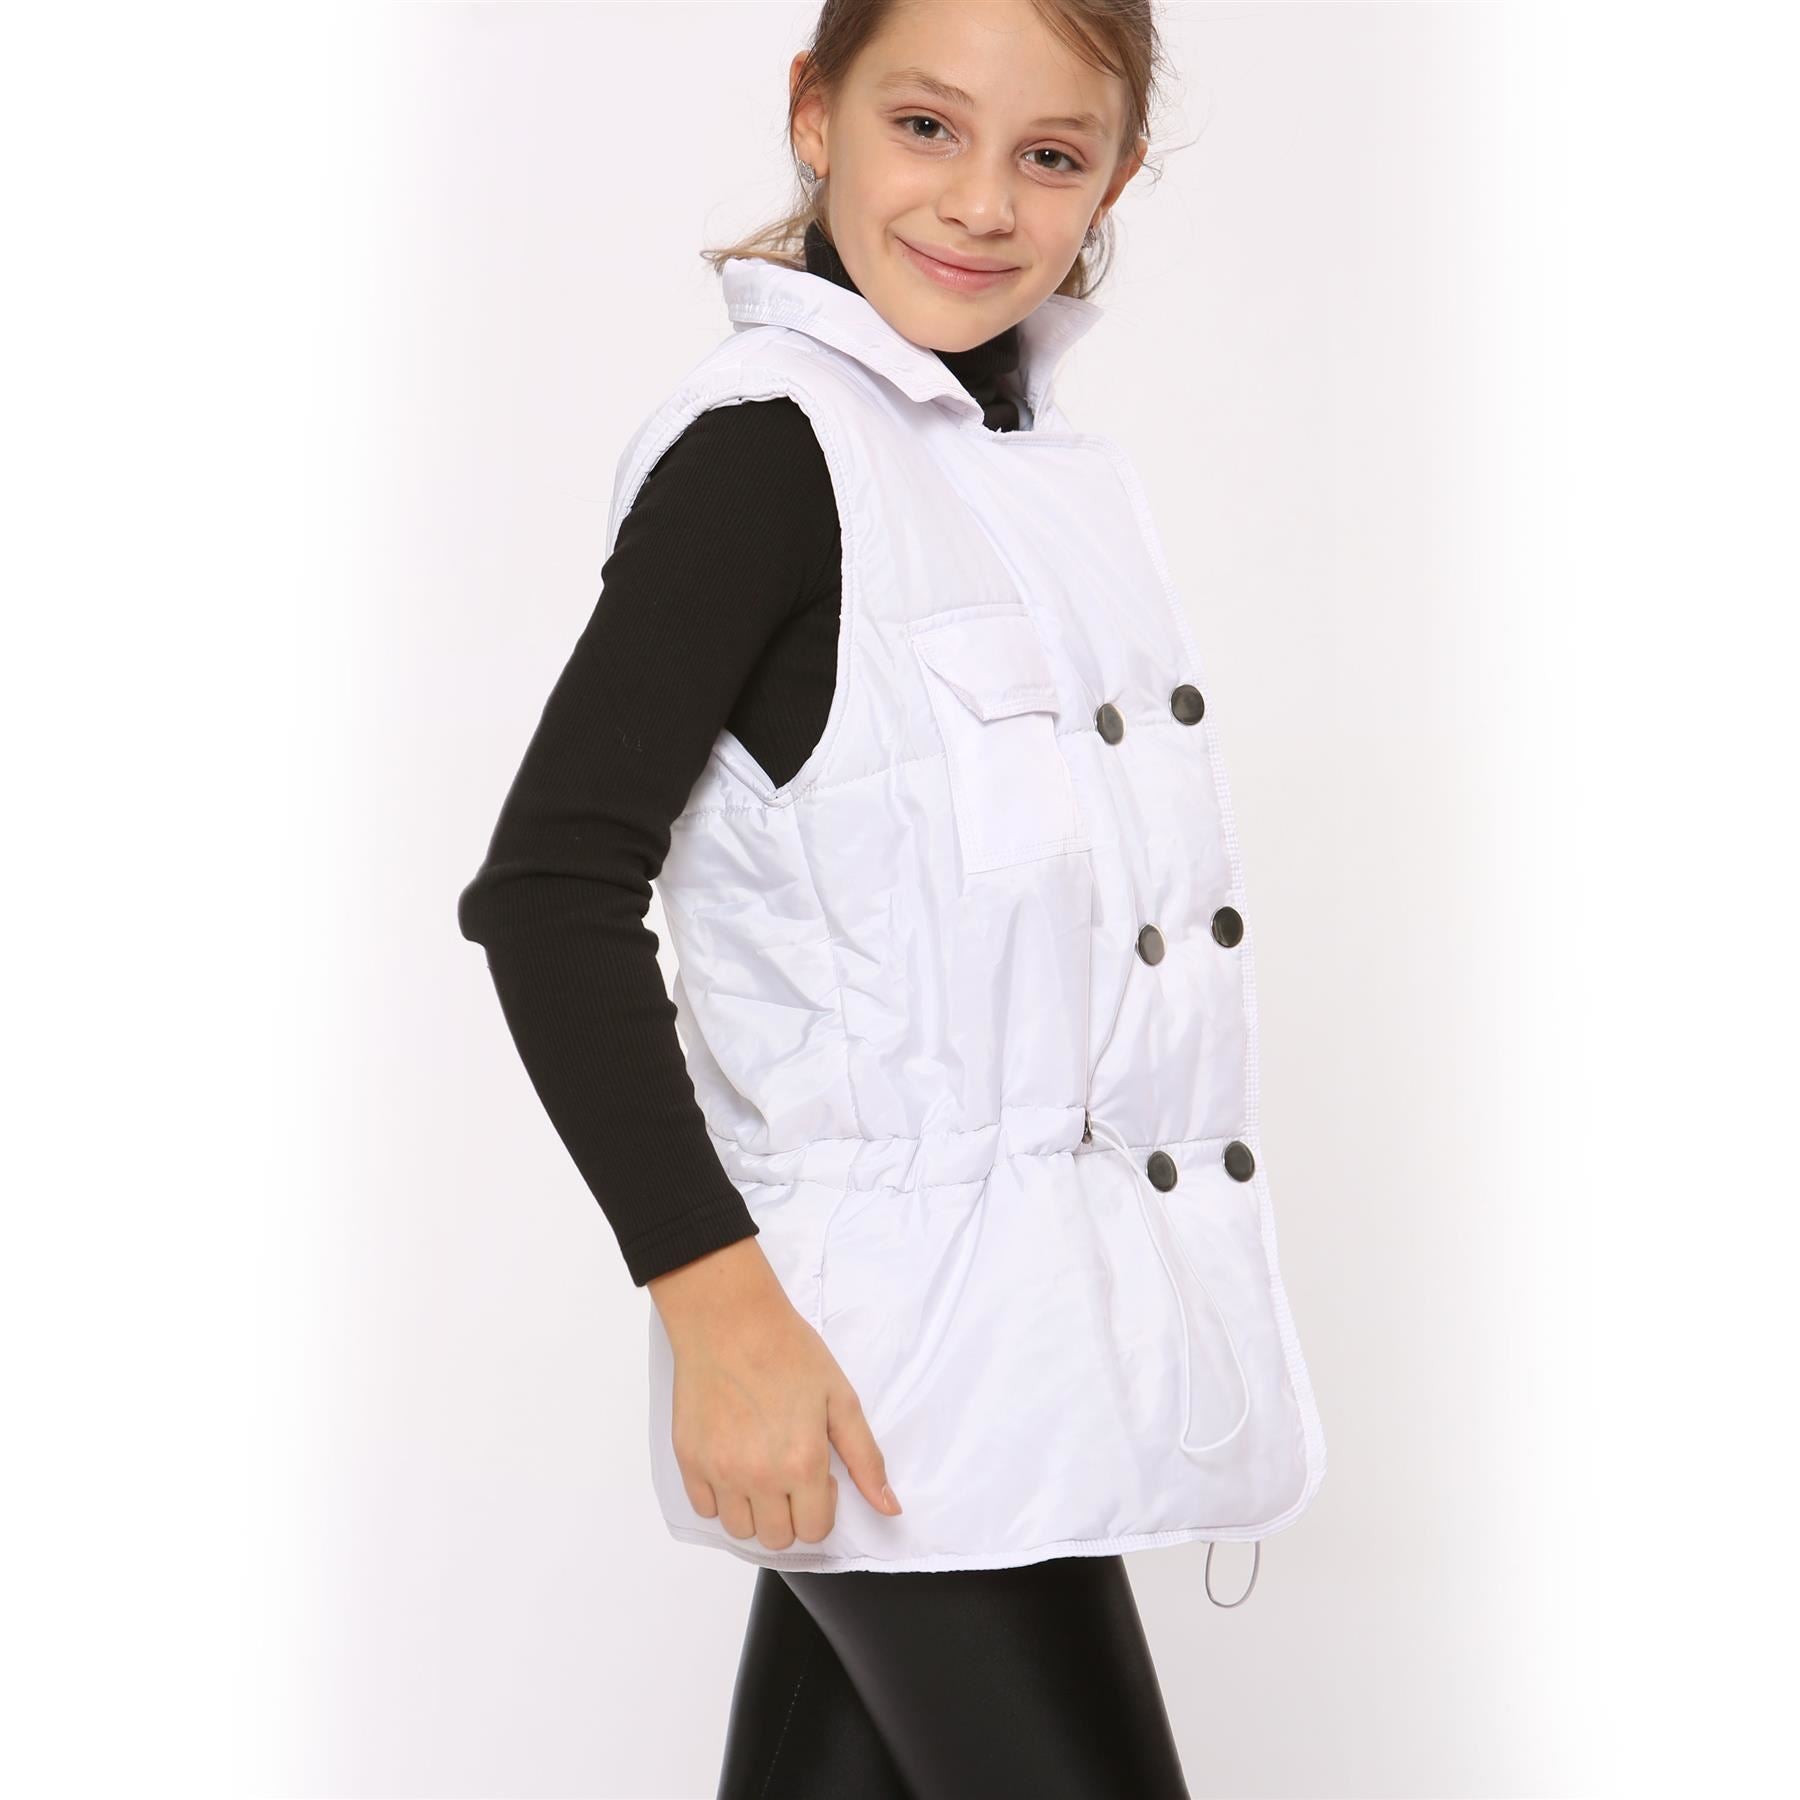 Kids Girls White Oversized Style Sleeveless Jacket